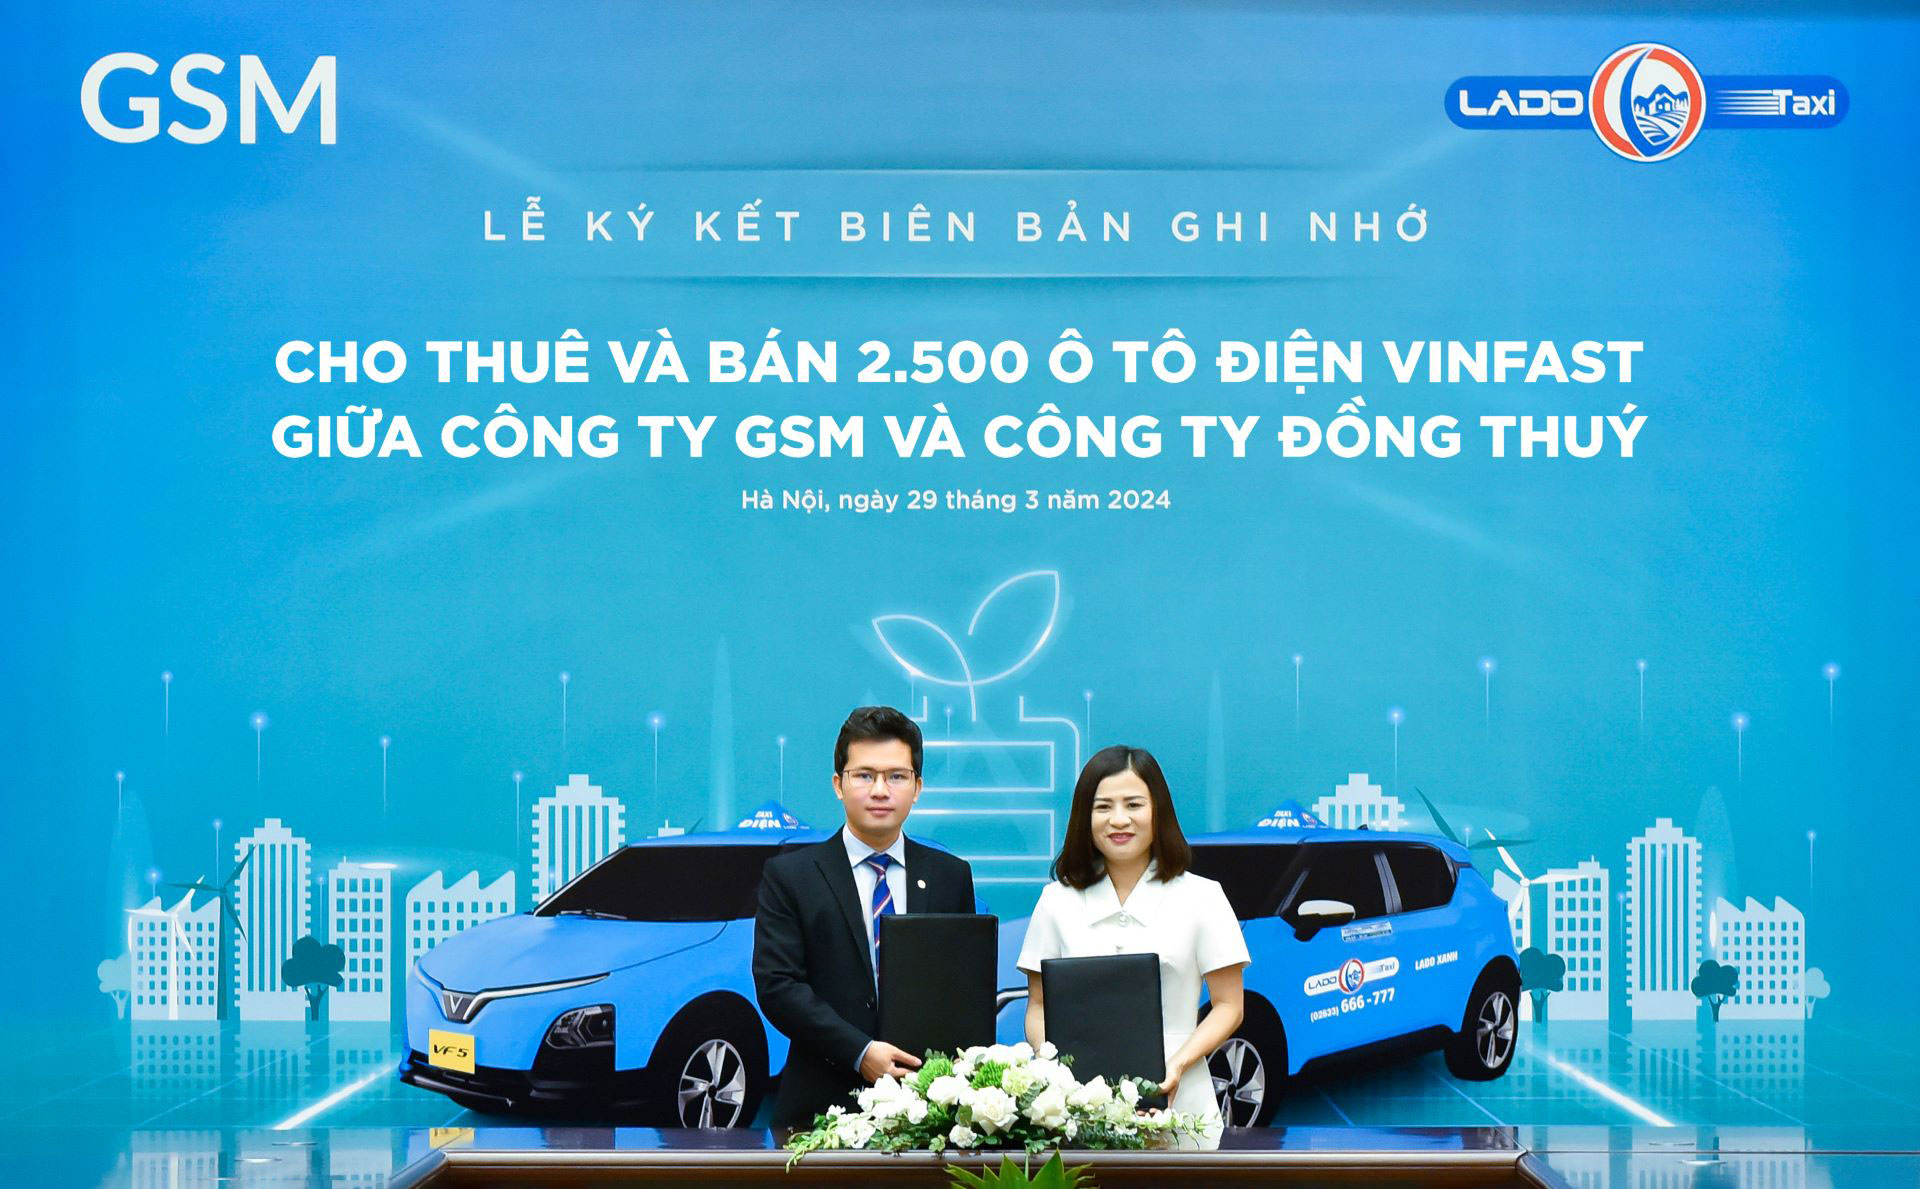 Lado Taxi ký thoả thuận mua và thuê 2500 ô tô điện VinFast từ GSM